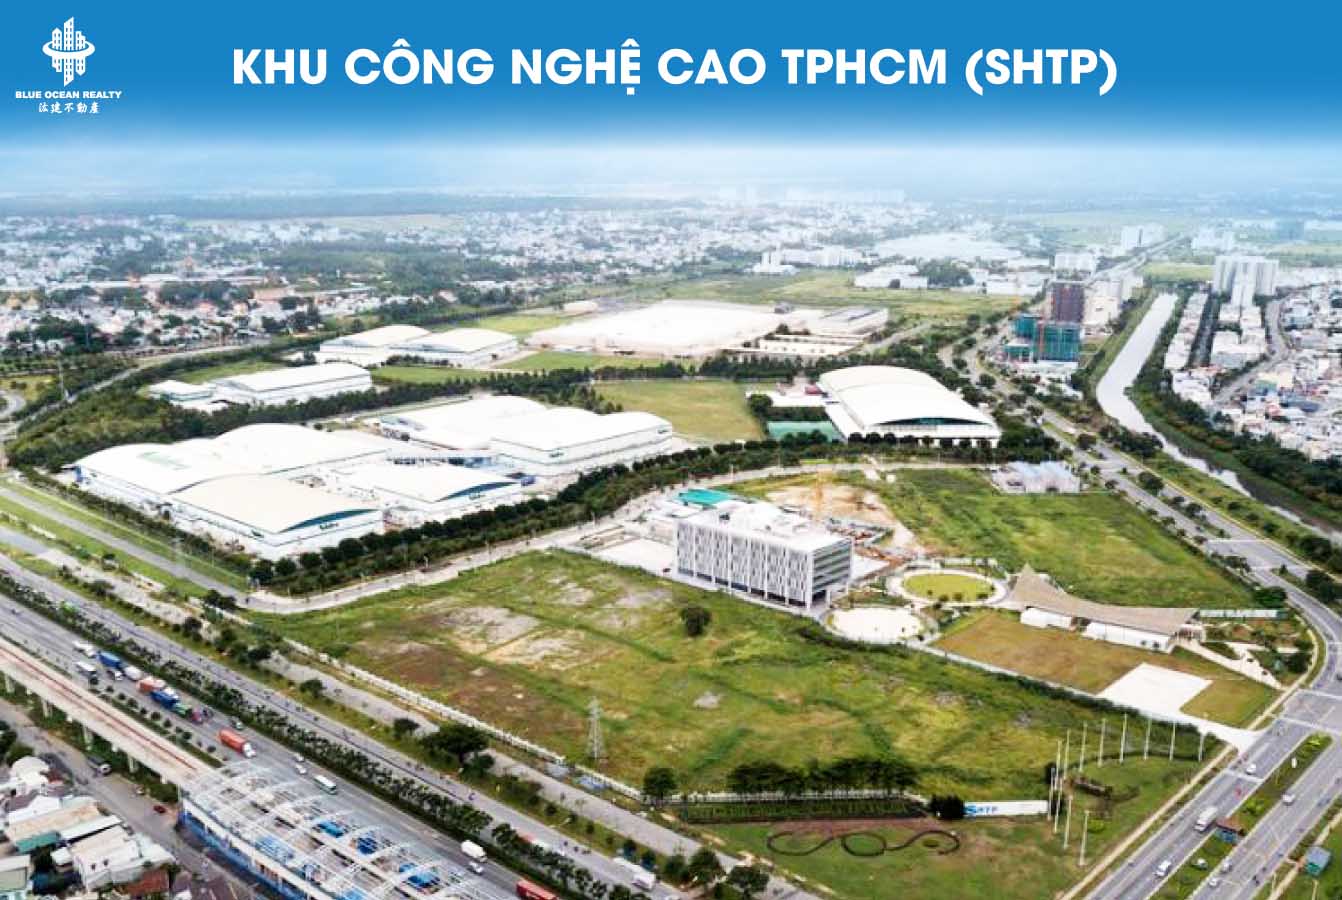 Khu công nghệ cao TPHCM (SHTP) tên tiếng anh là Saigon Hi-Tech Park